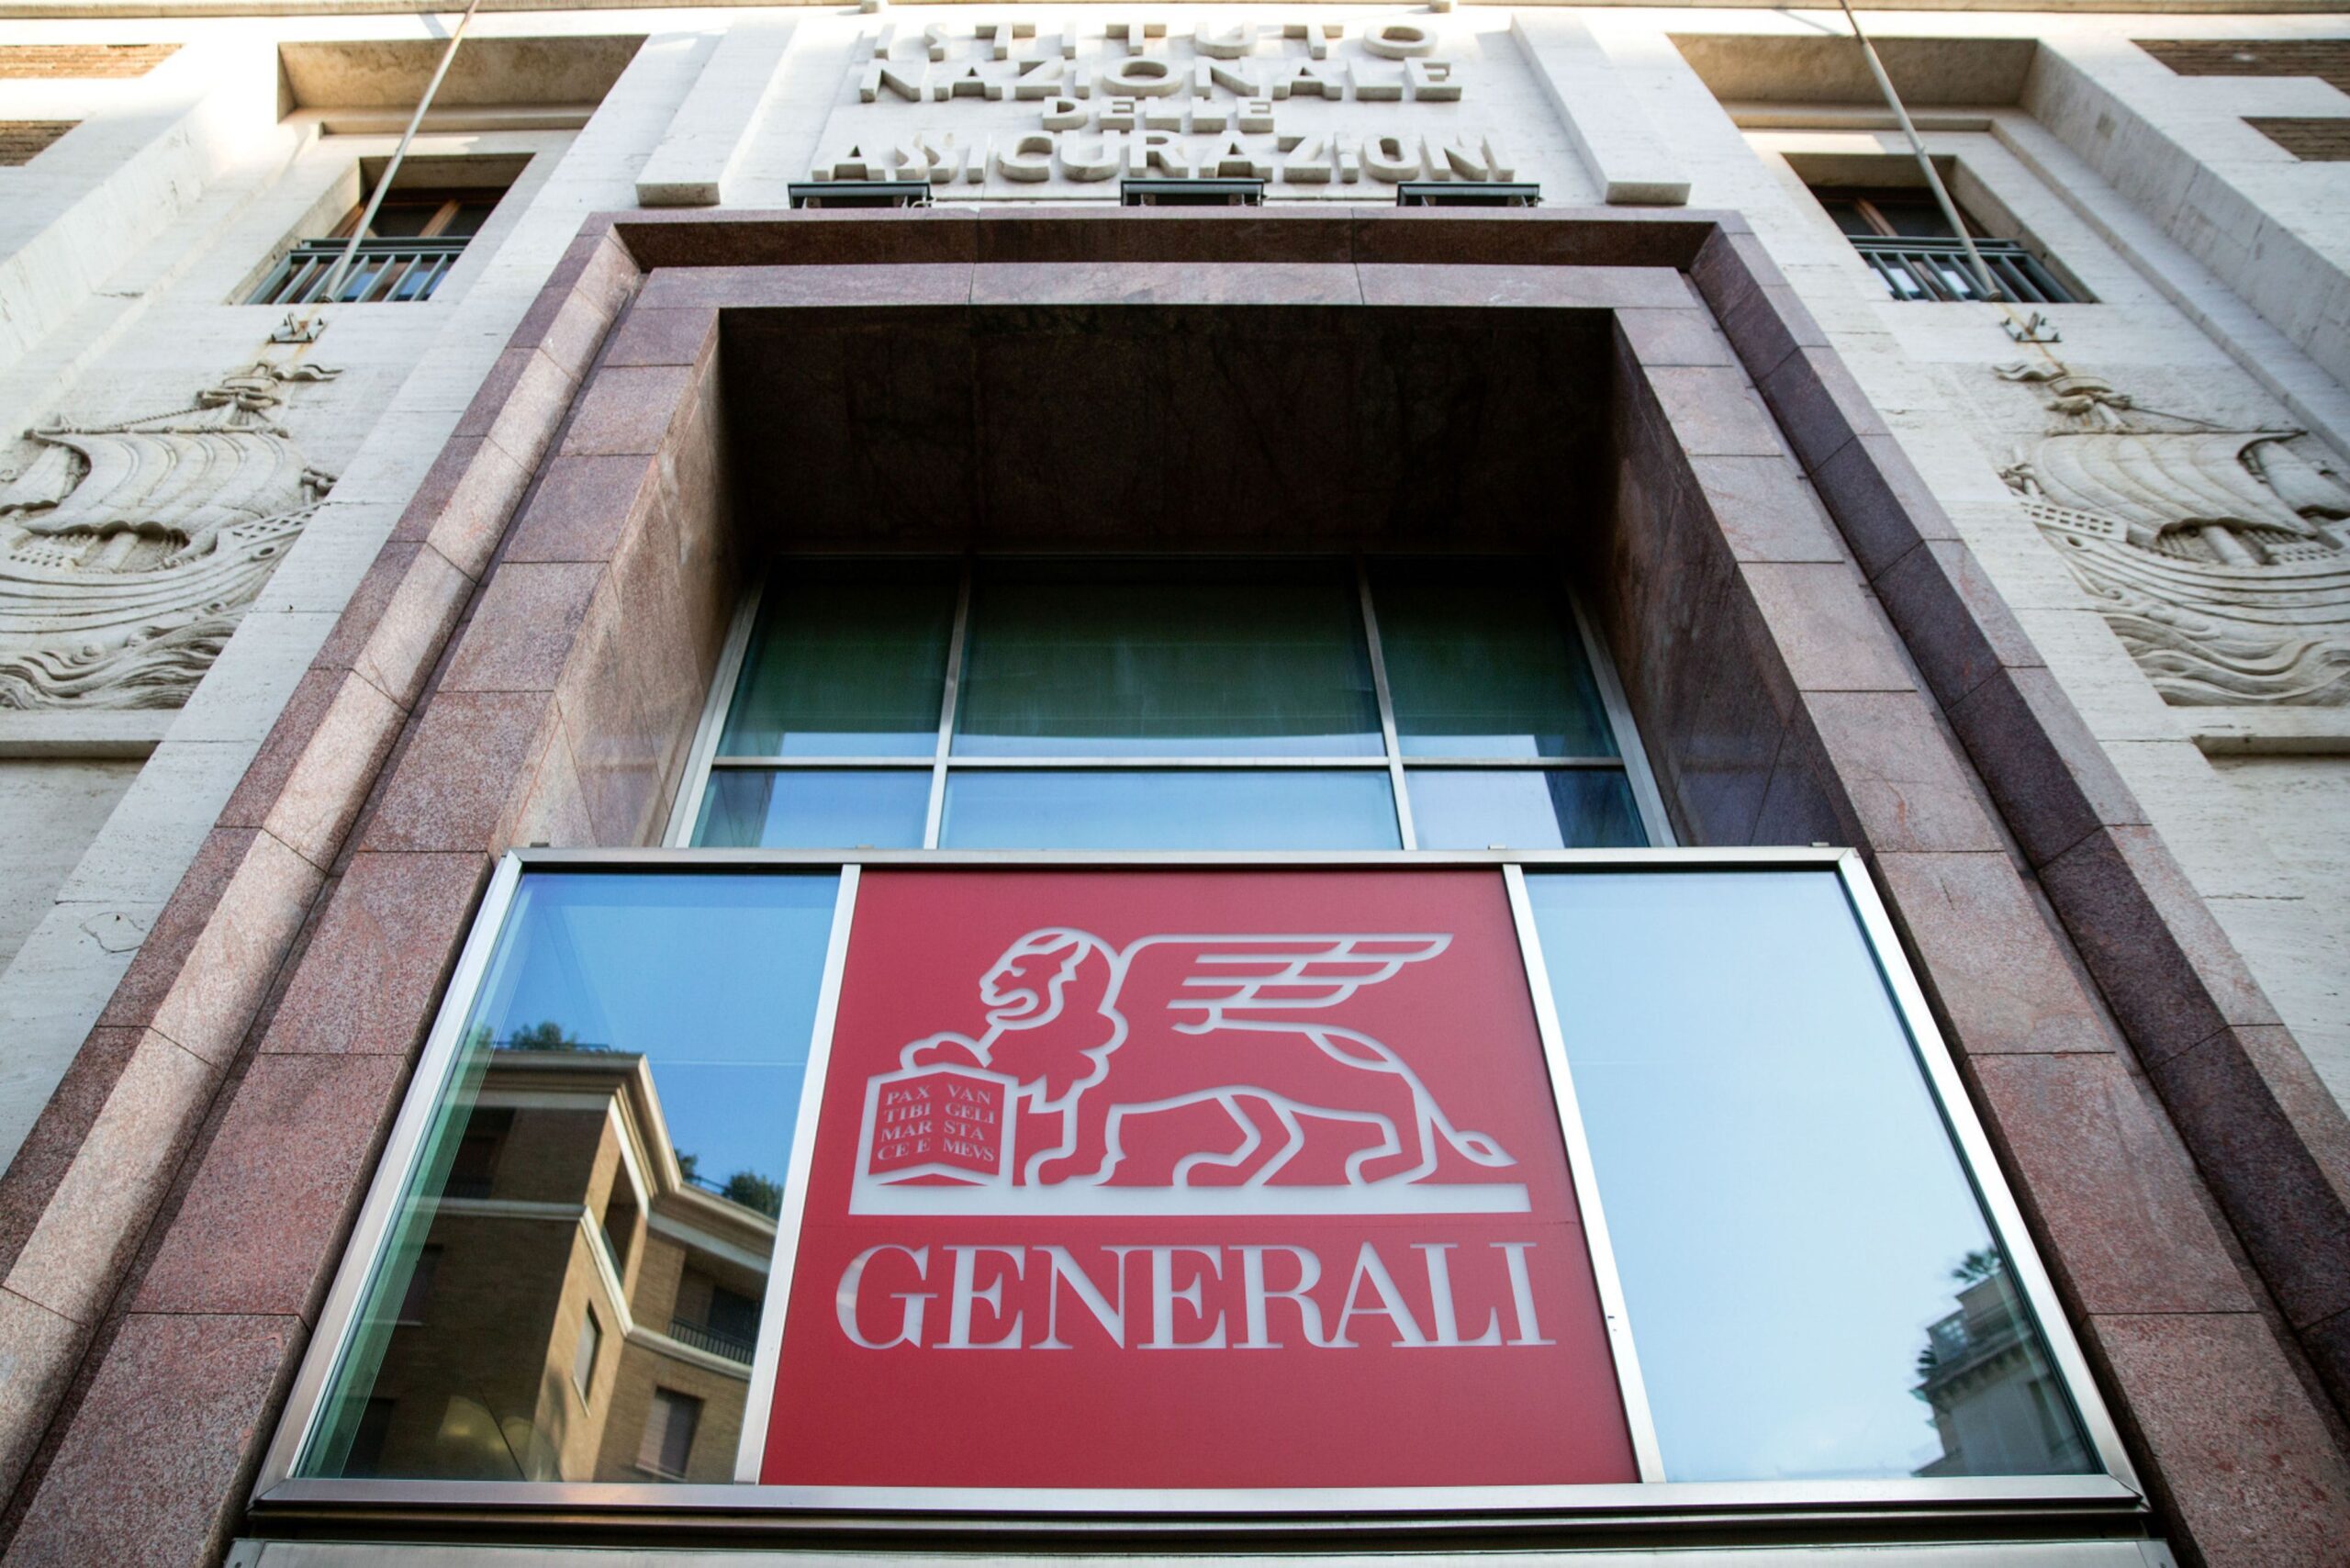 Generali Seeks Buyers for Tua Assicurazioni Unit